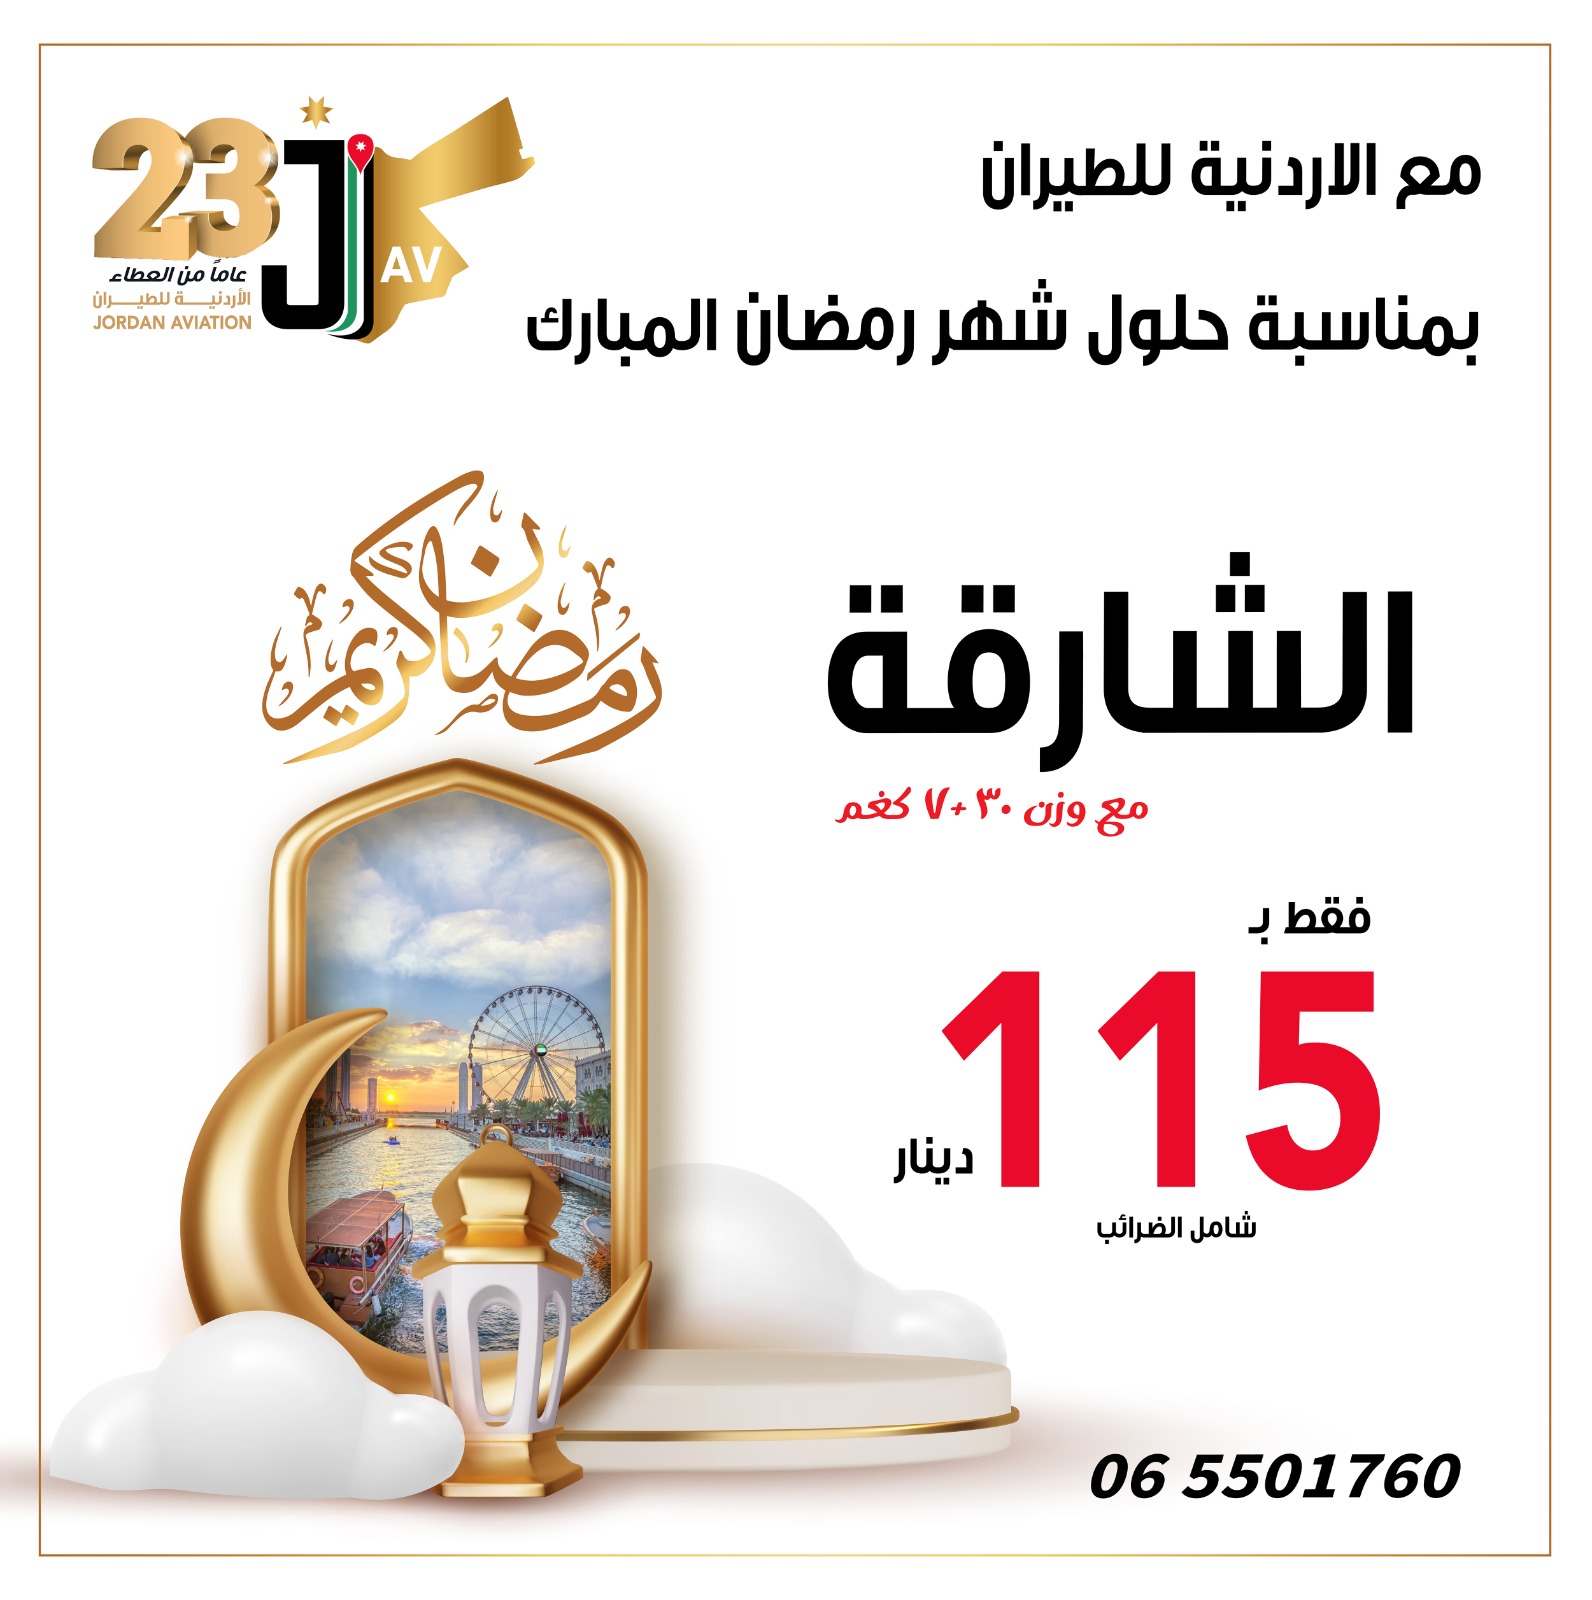 الأردنية للطيران و بمناسبة الشهر الفضيل تعلن عن عرض خاص الى الشارقة فقط ب 115 دينار 